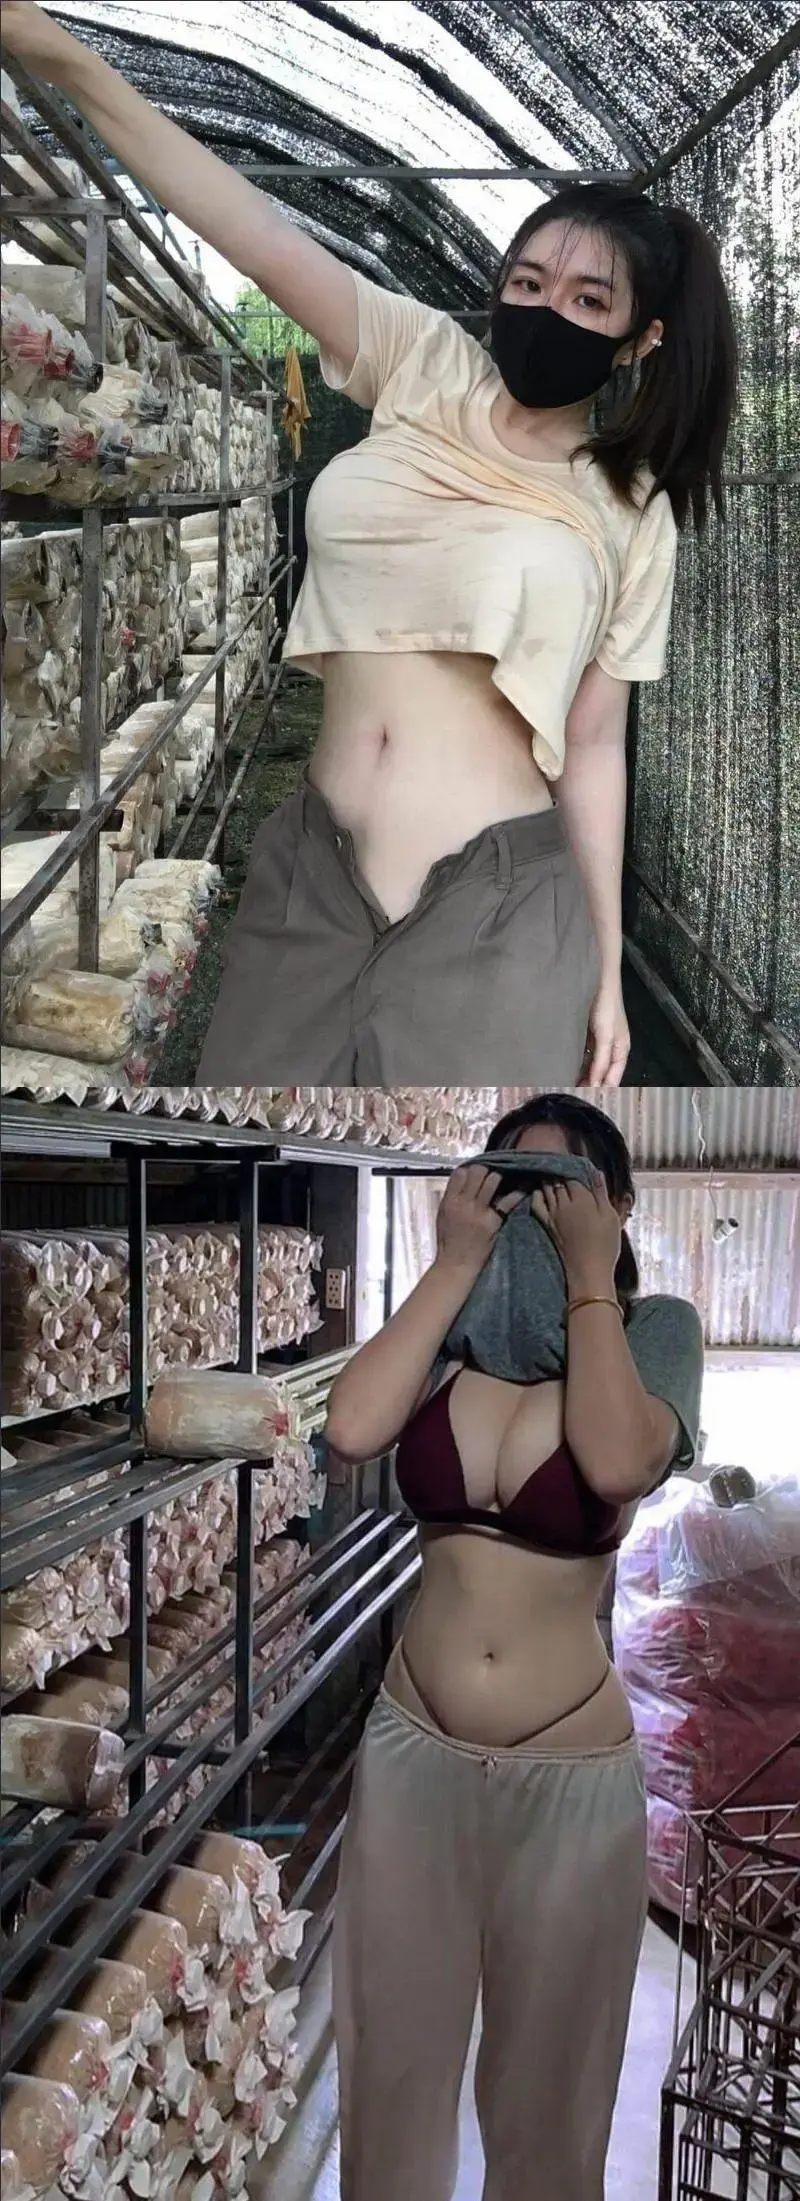 은근히 존재한다는 시골 처녀 몸매 | mbong.kr 엠봉